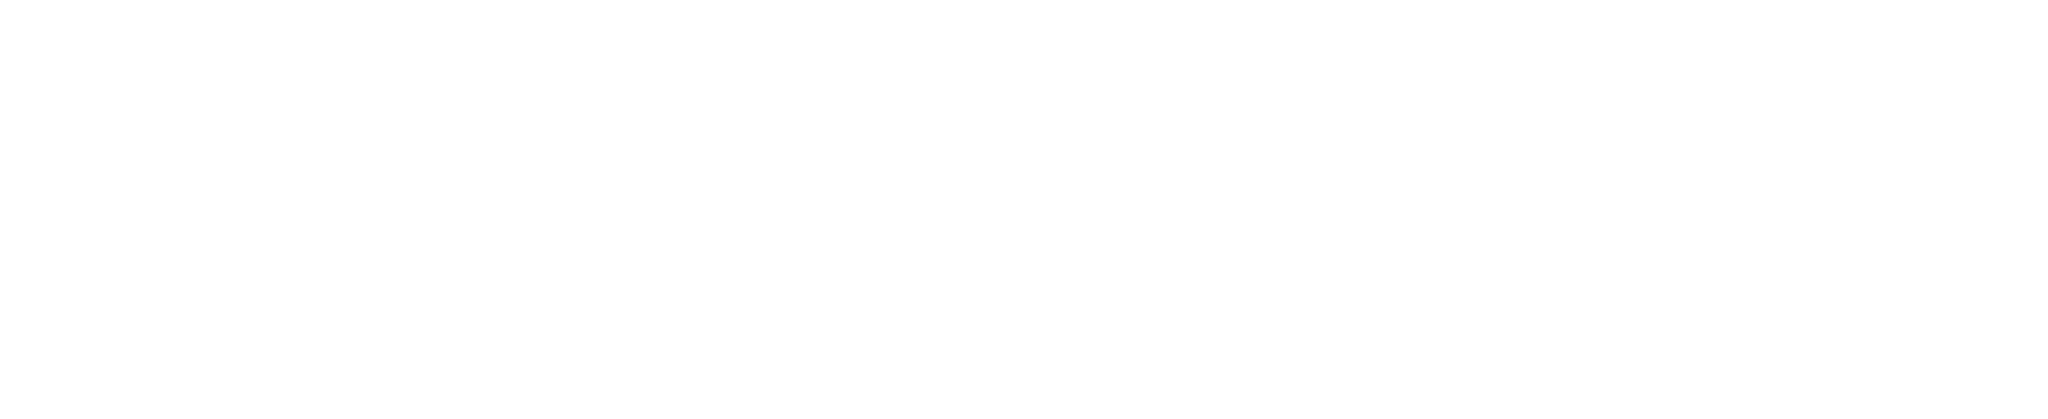 Logotipo principal de Pro Amperos negativo